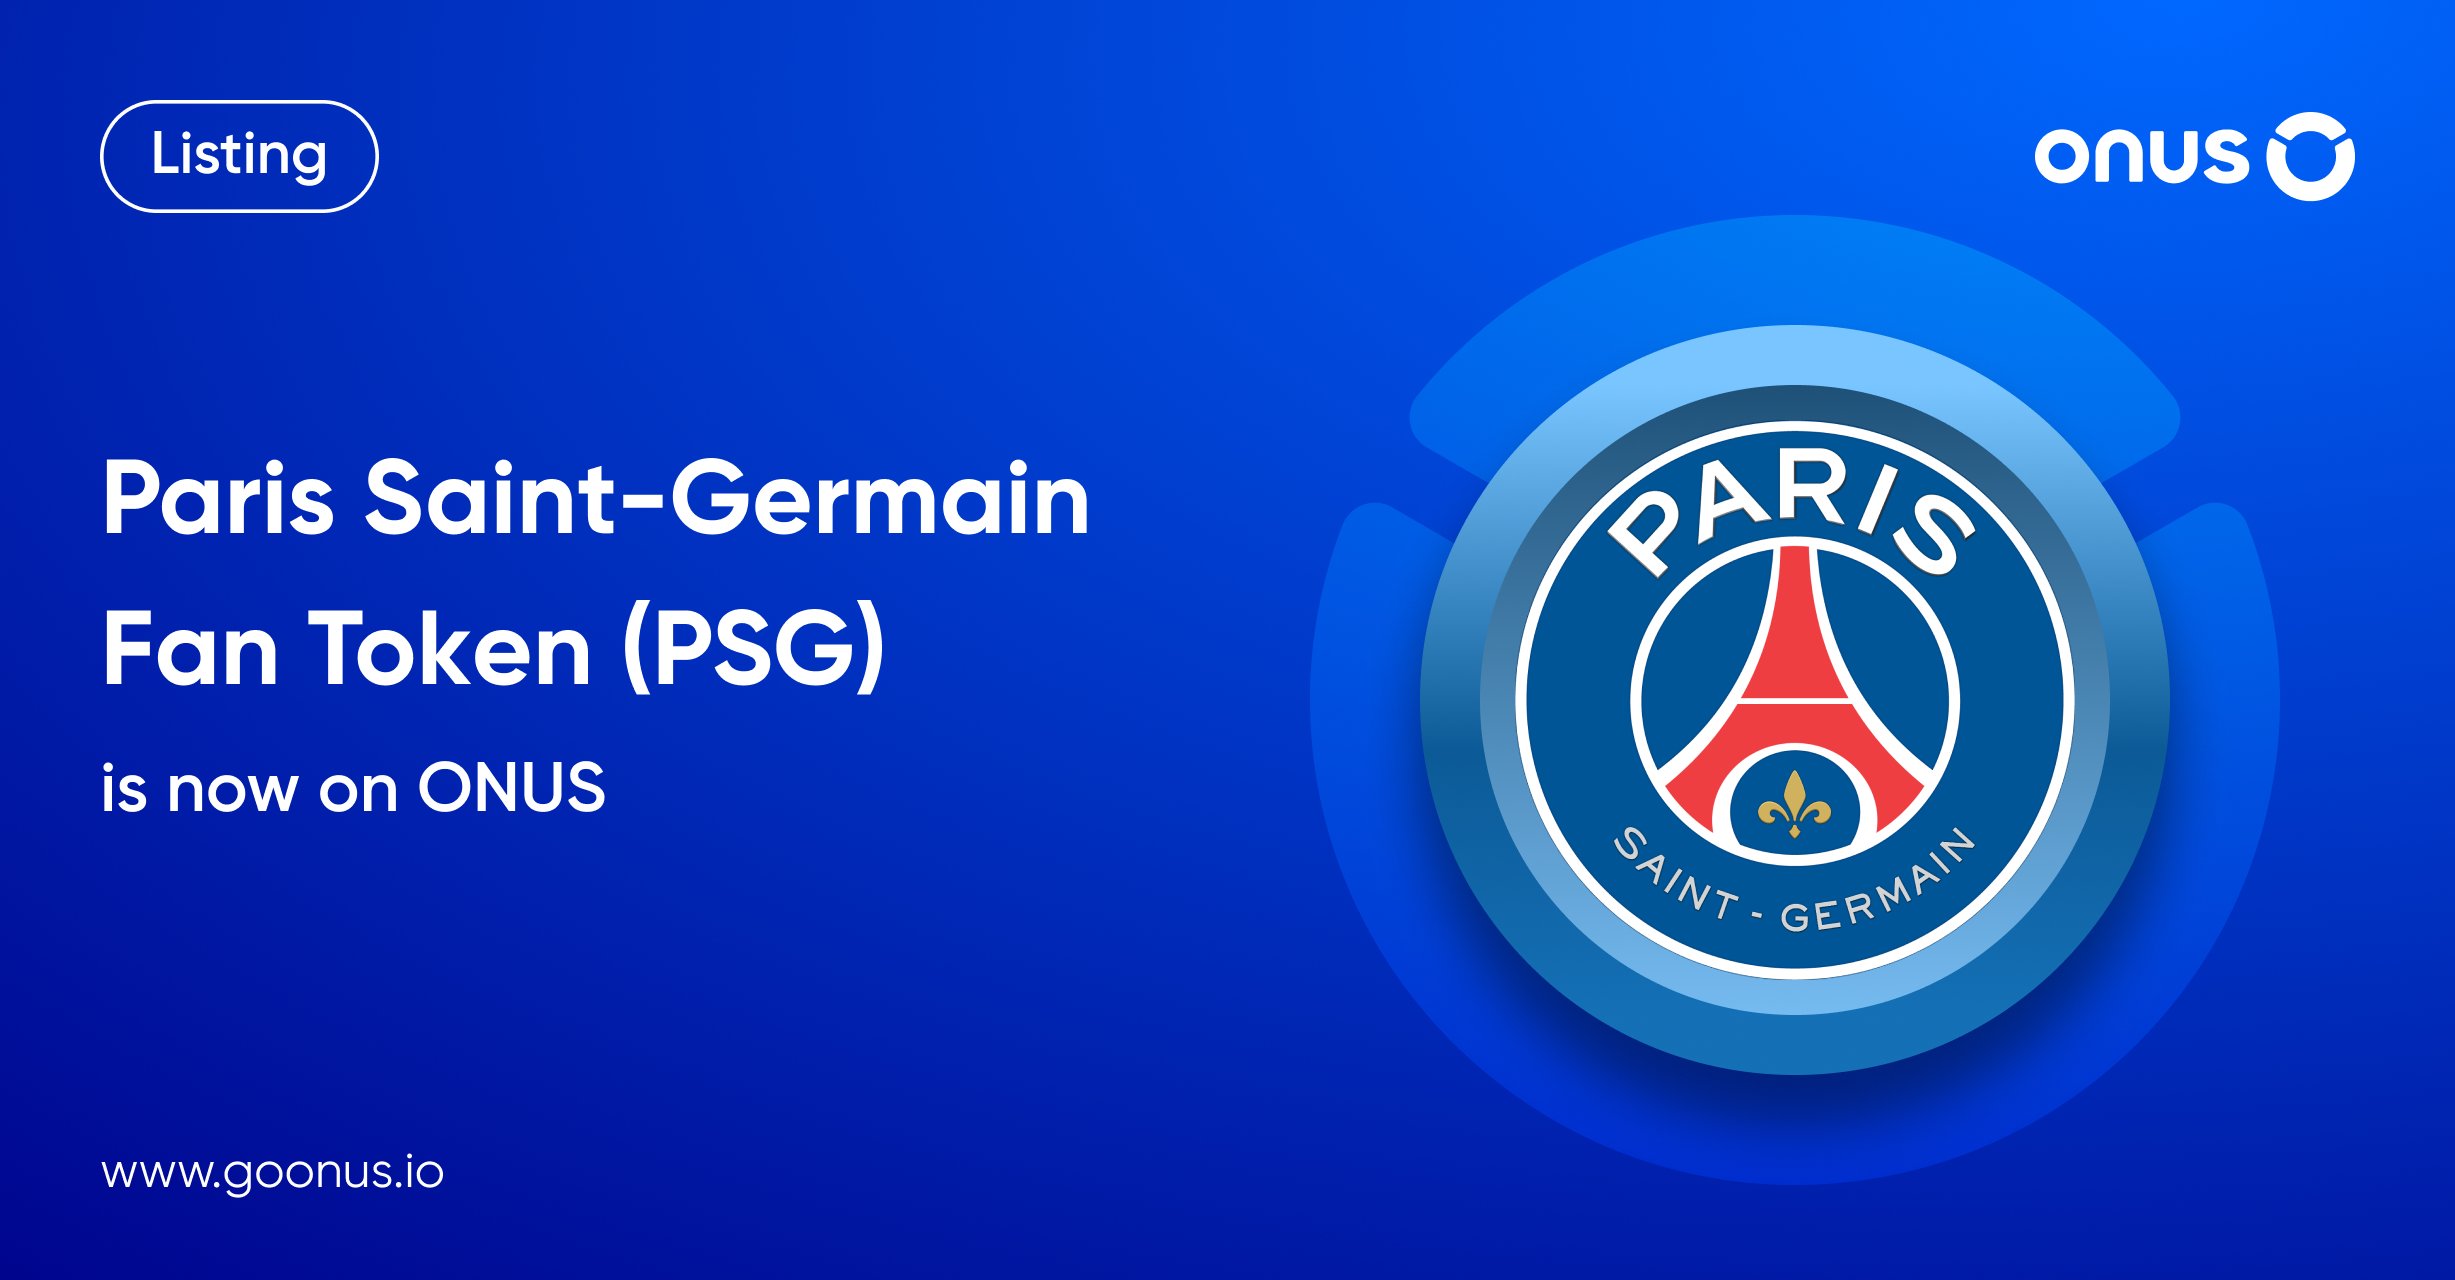 Paris SaintGermain Fan Token (PSG) is now available on ONUS